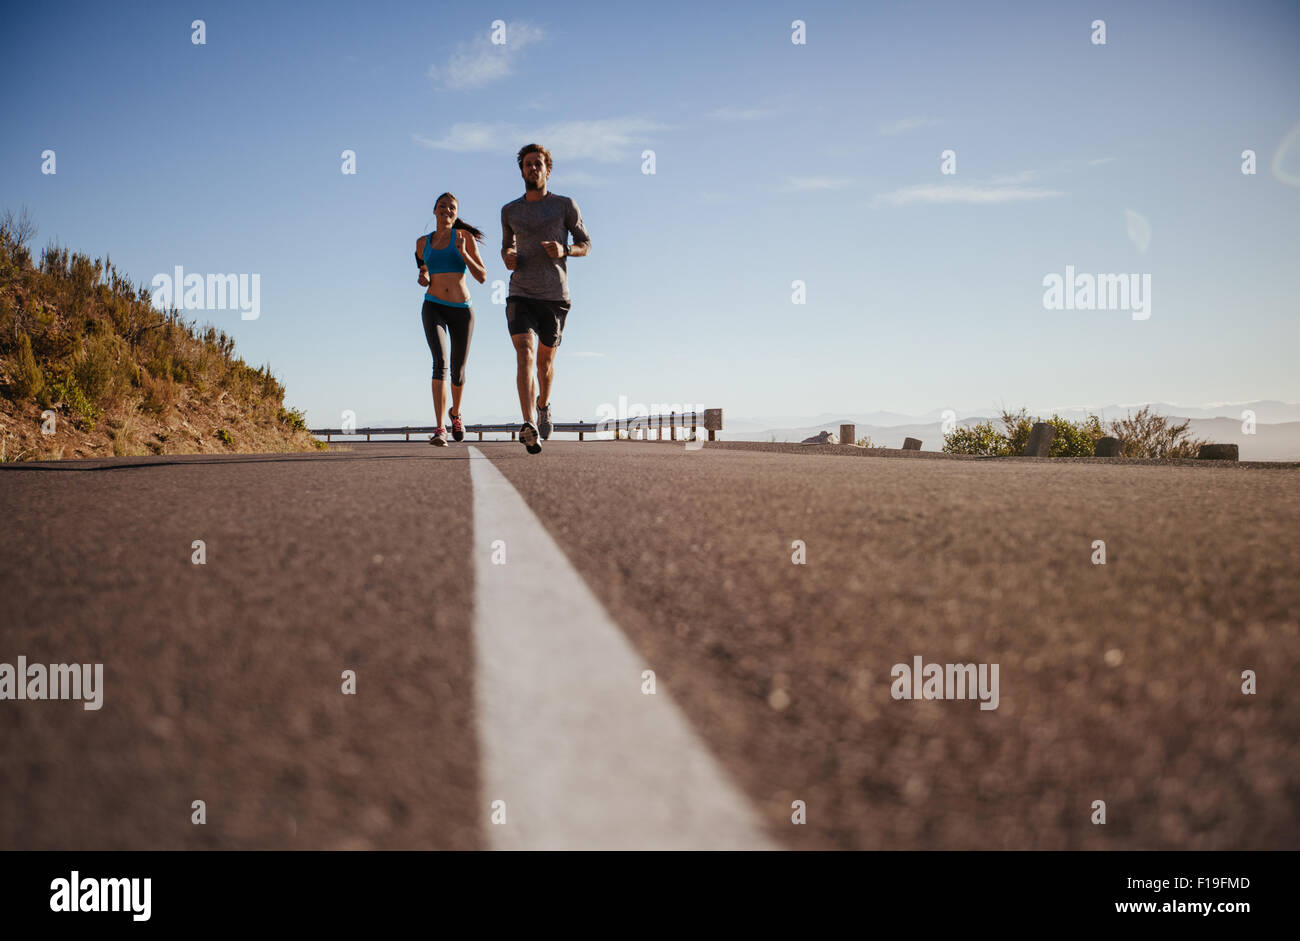 Deux jeunes gens d'exécution on country road, low angle shot de coureurs sur route ouverte sur une journée d'été. Banque D'Images